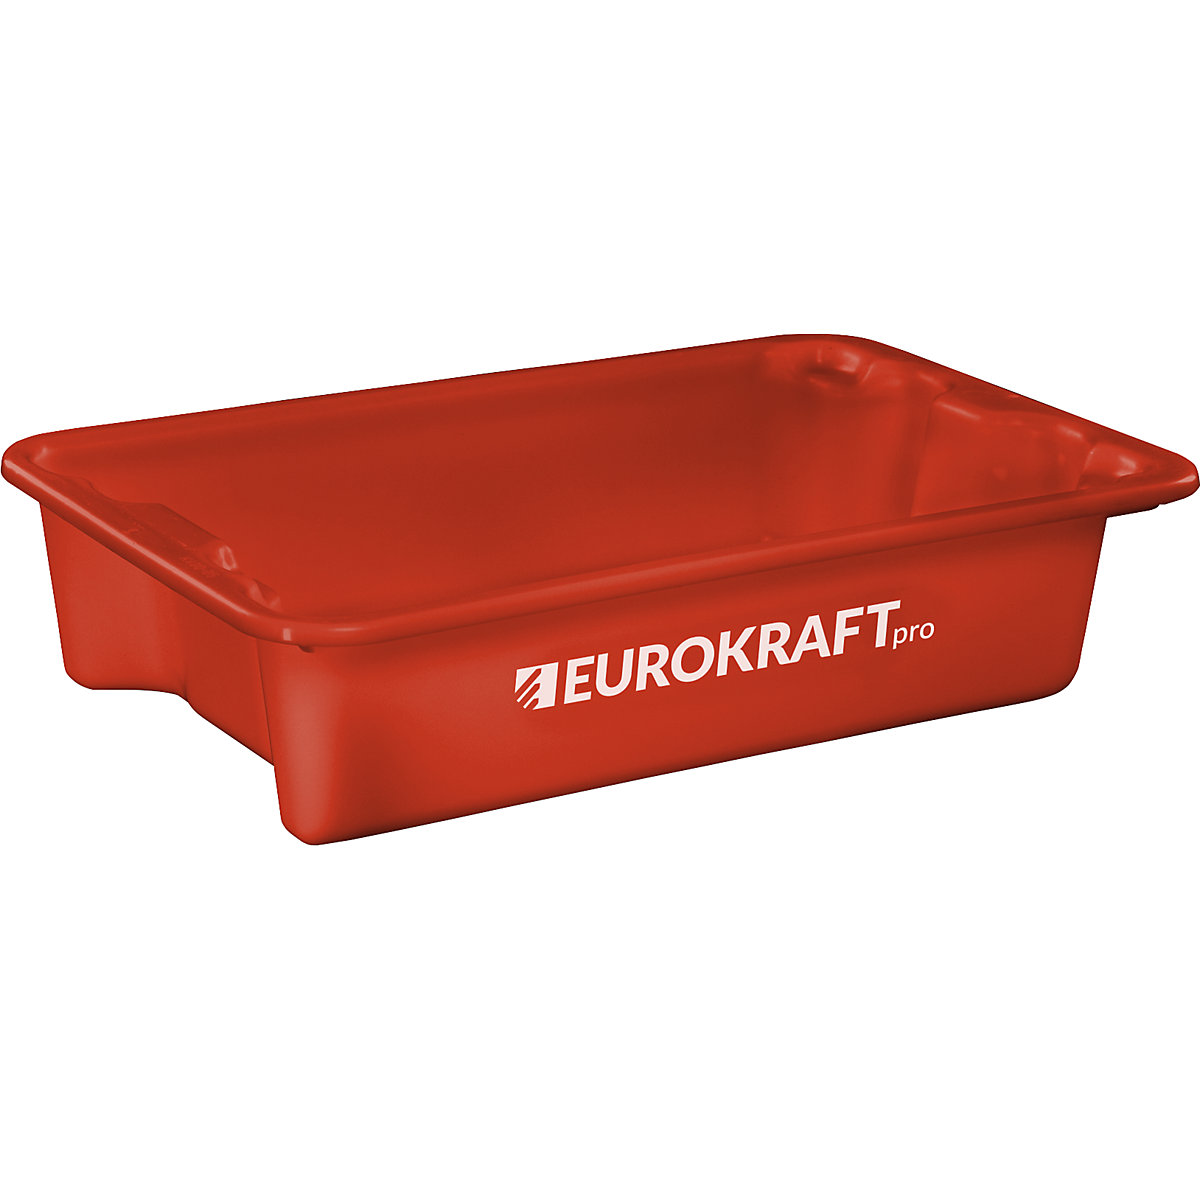 EUROKRAFTpro Drehstapelbehälter aus lebensmittelechtem Polypropylen, Inhalt 18 Liter, VE 3 Stk, Wände und Boden geschlossen, rot